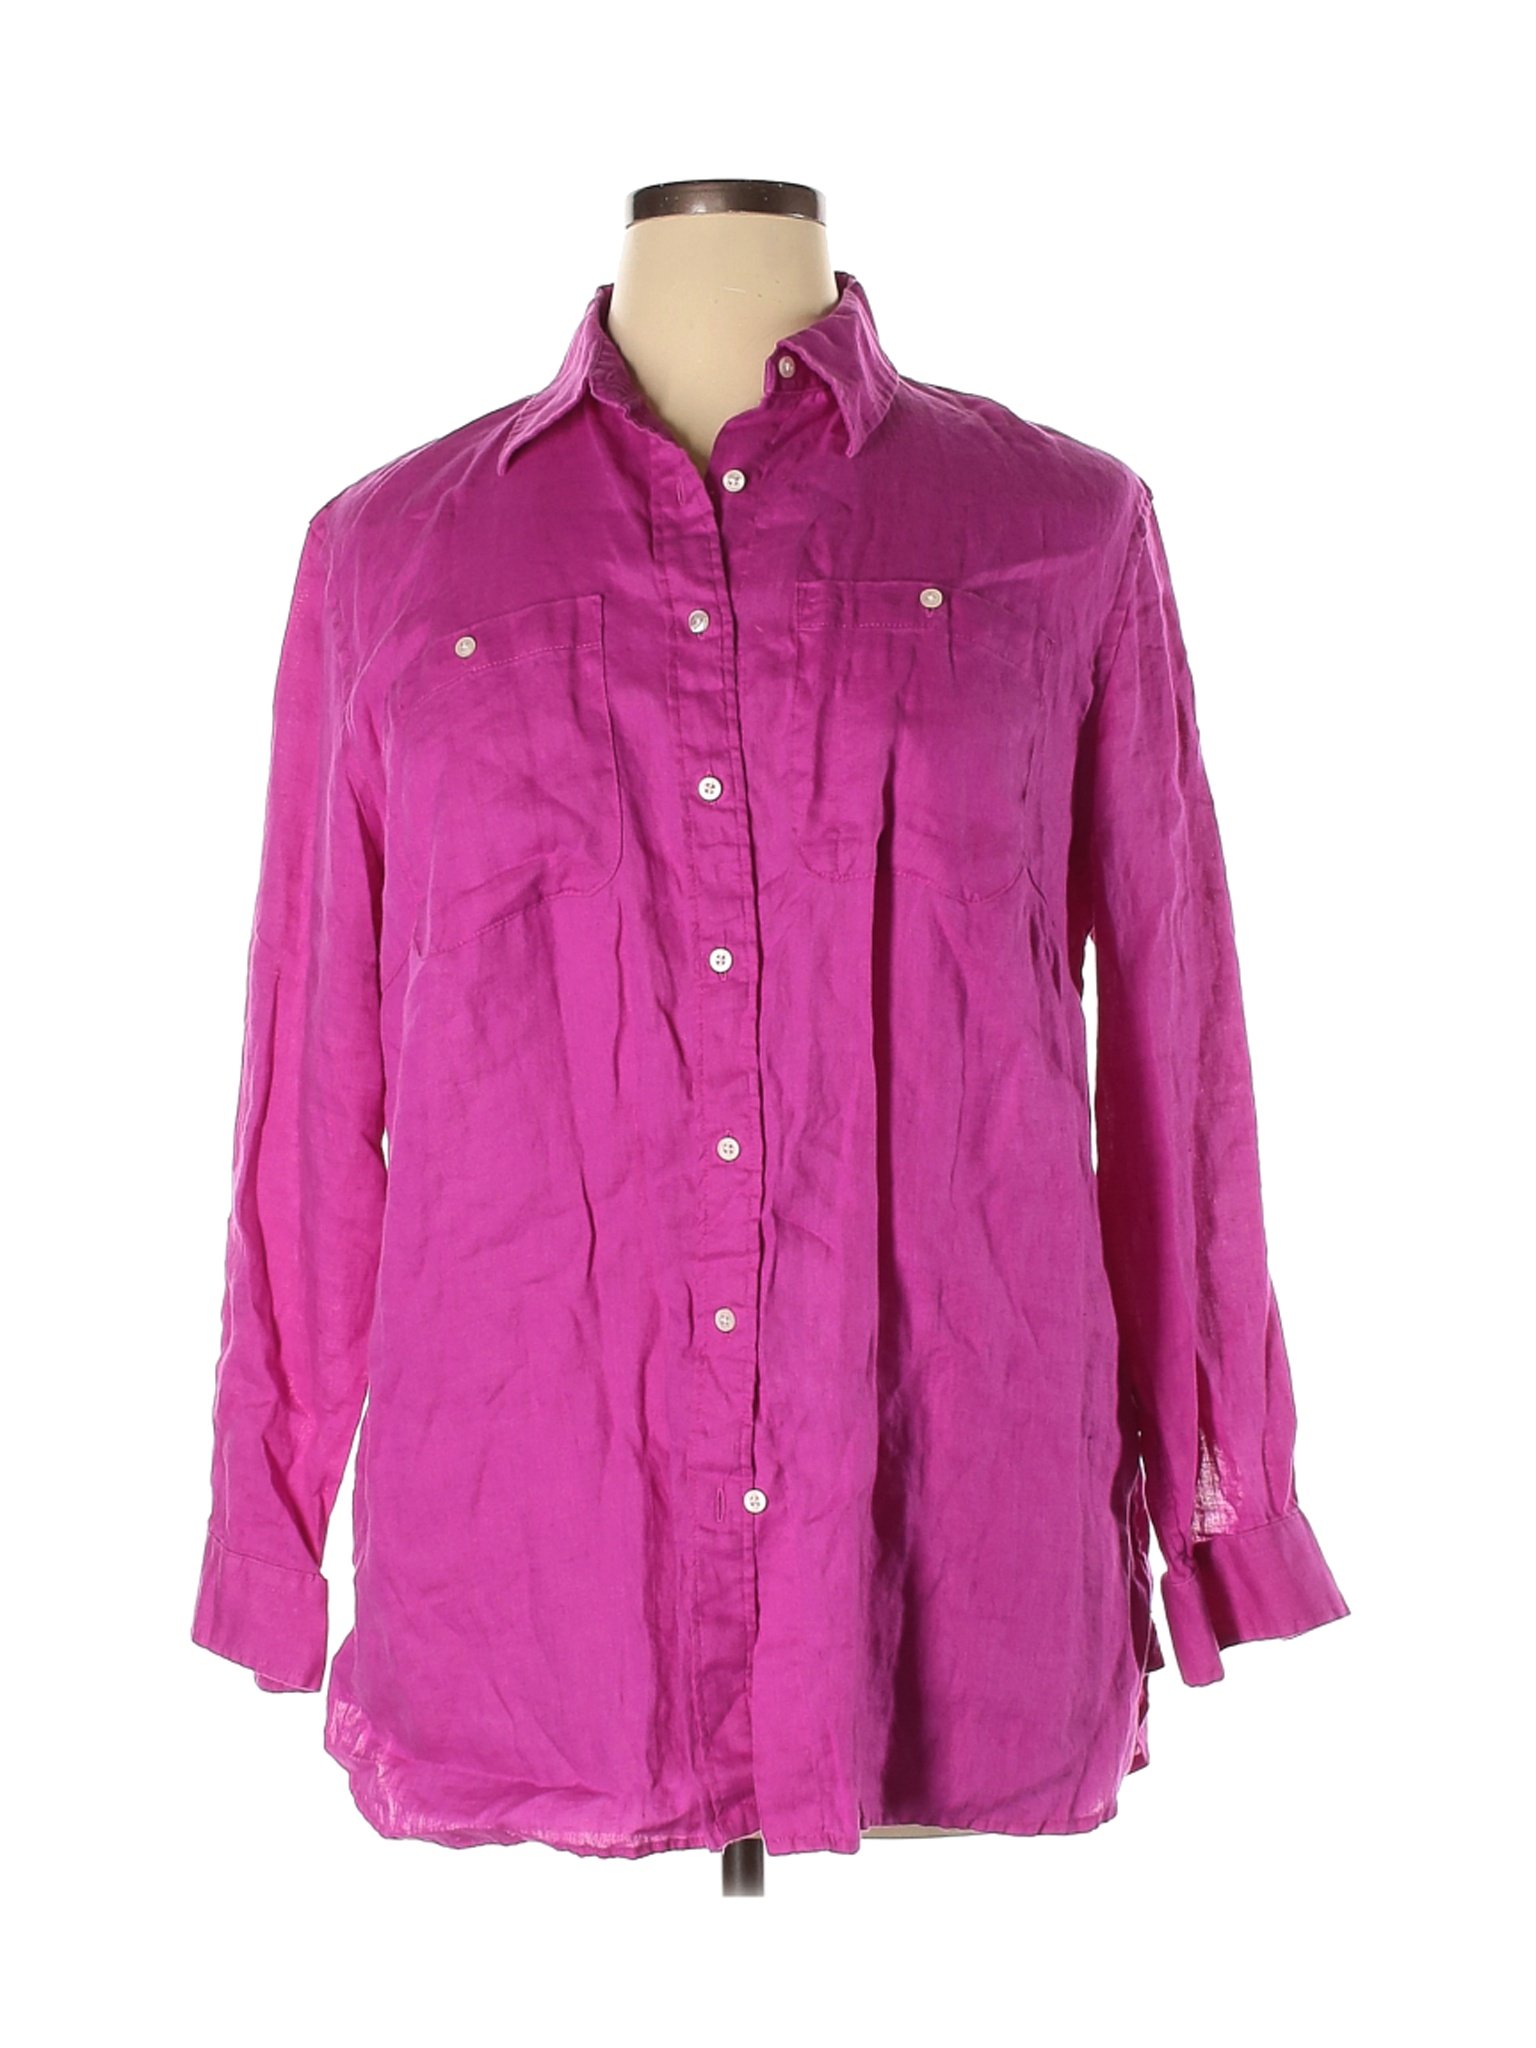 Lauren by Ralph Lauren Women Pink Long Sleeve Button-Down Shirt 1X Plus ...